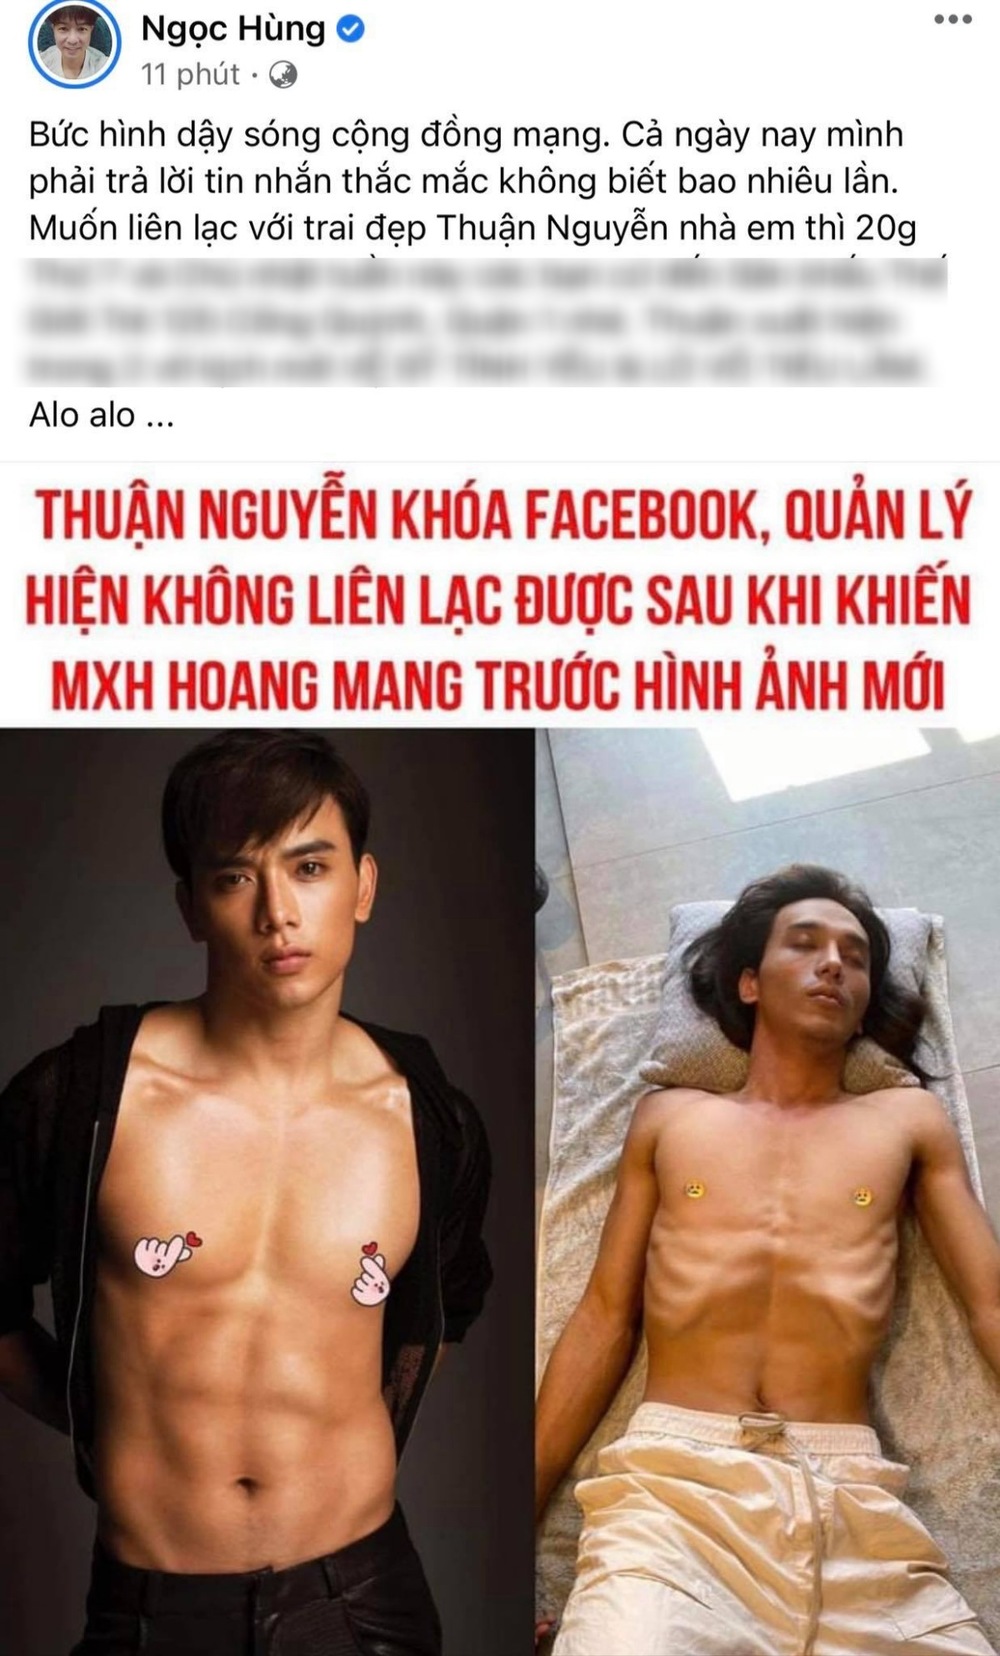  
Tình hình của Thuận Nguyễn được đồng nghiệp cập nhật (Ảnh: Chụp màn hình).